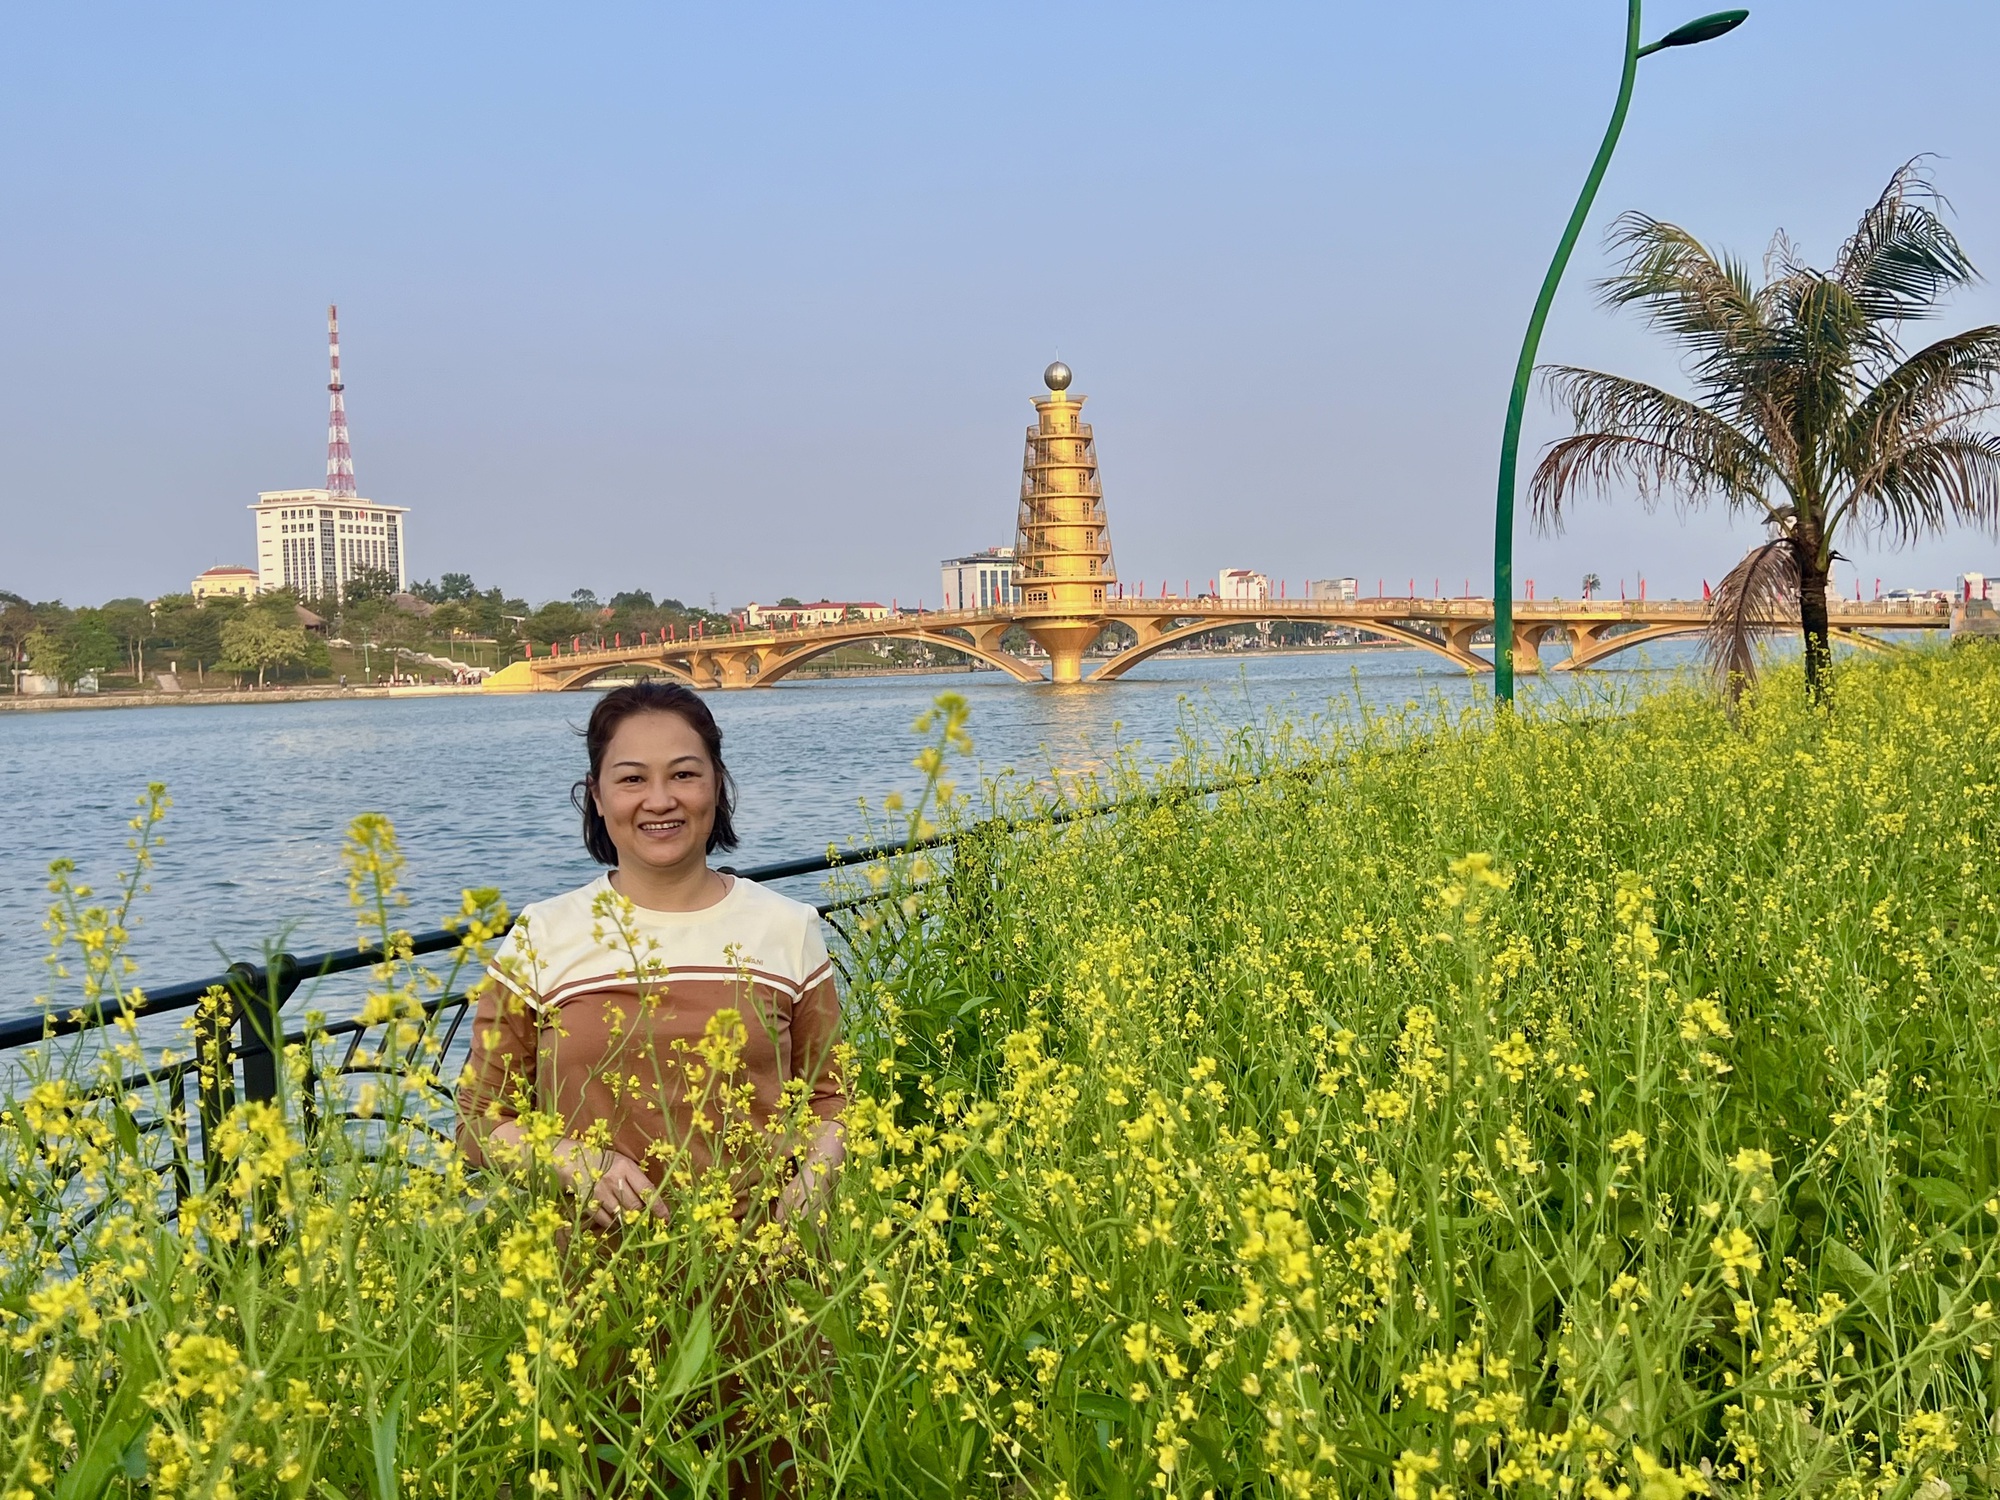 Mê mẩn vườn hoa cải vàng rực ở Phú Thọ, khách check-in quên lối về- Ảnh 2.